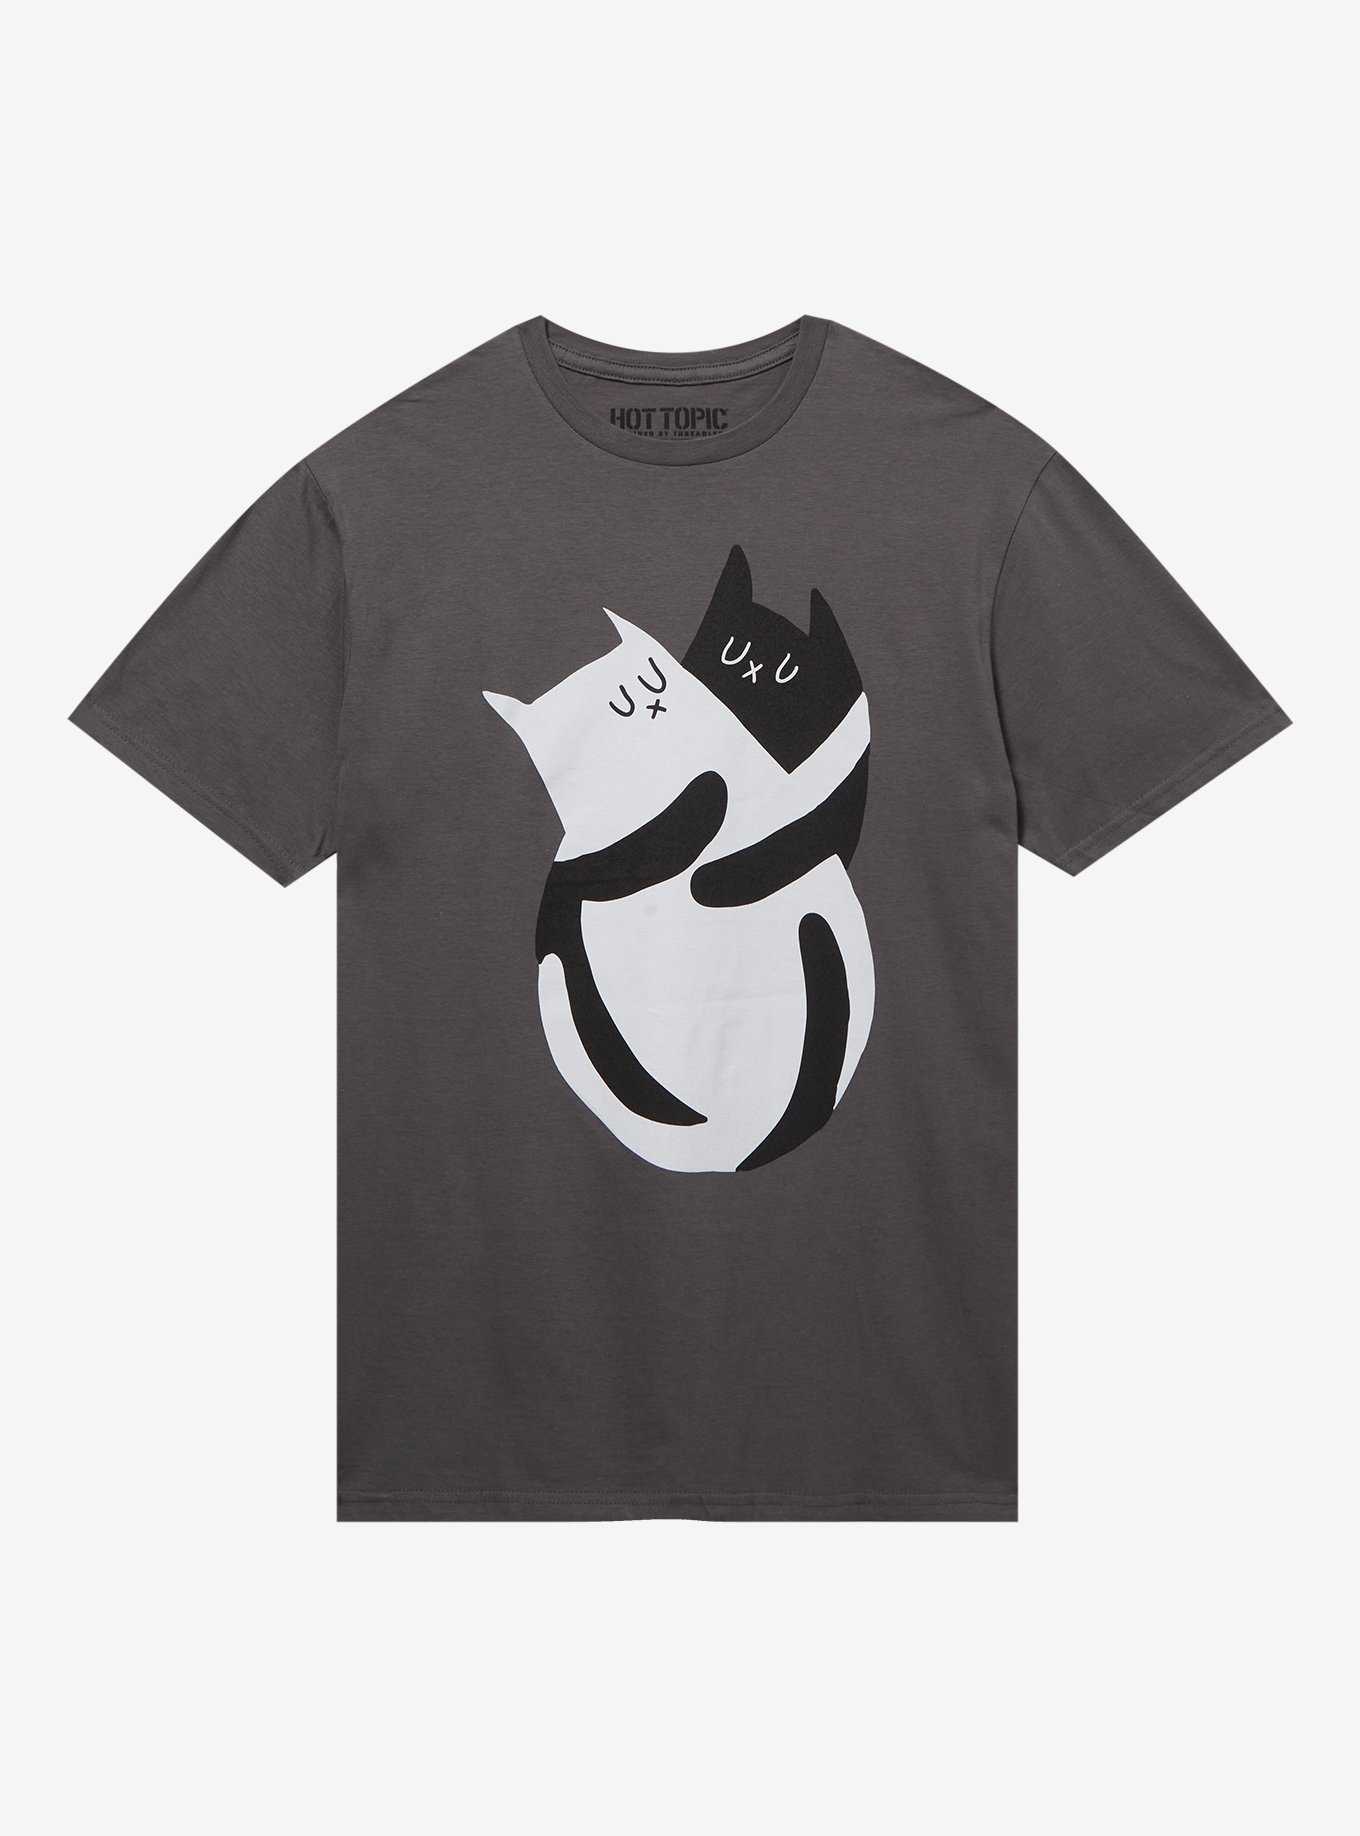 Black & White Cat Hug T-Shirt By LemonYeti, , hi-res